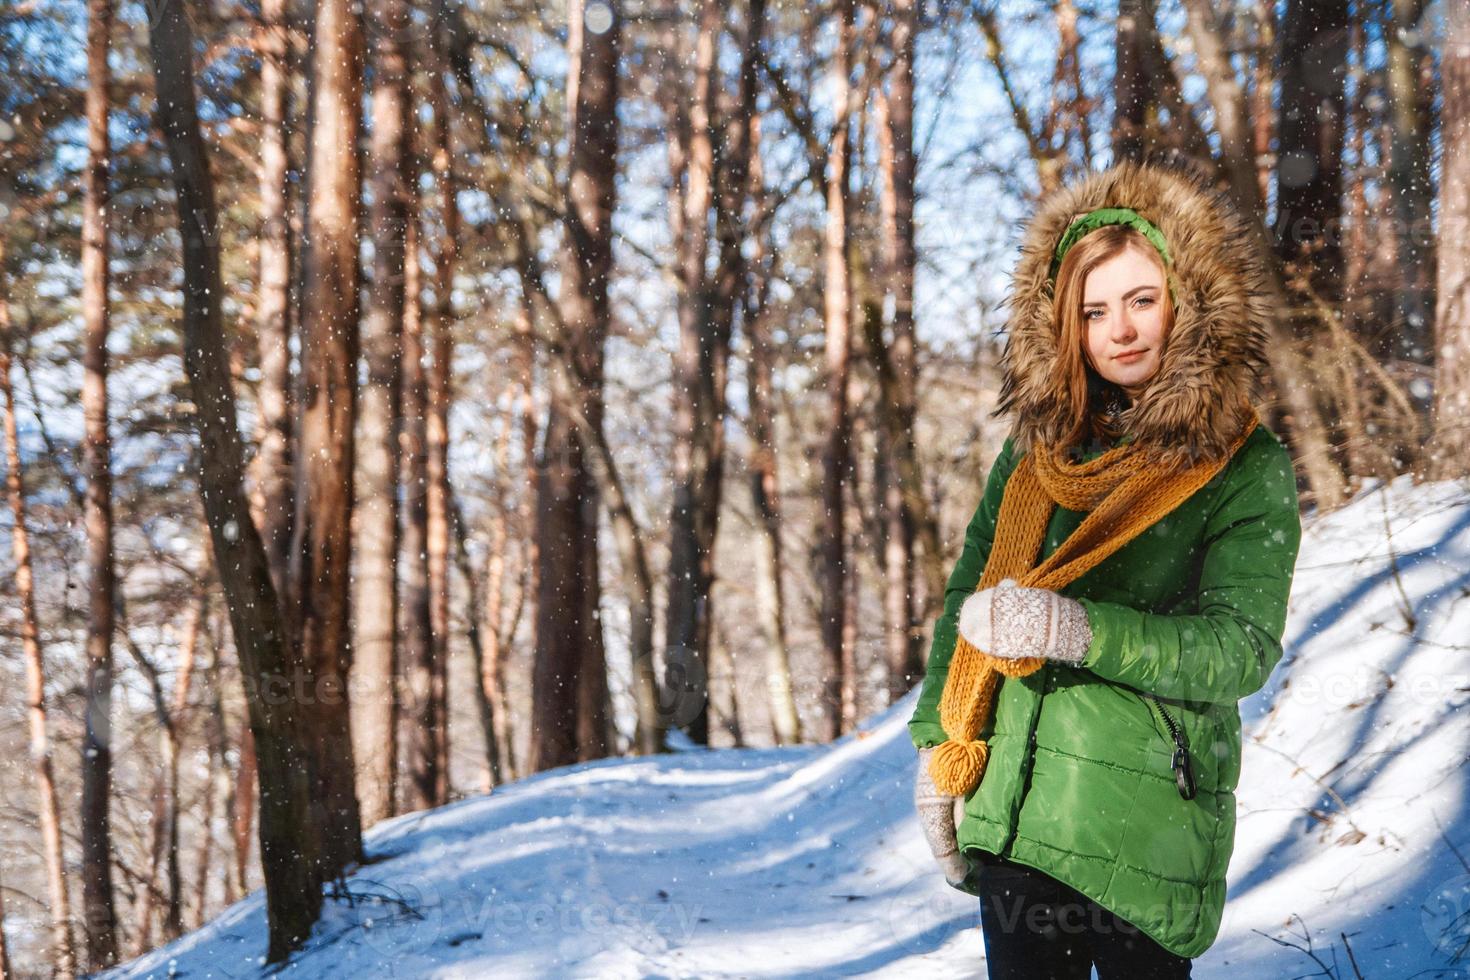 Una niña con un suéter y gafas en invierno en un bosque cubierto de nieve.